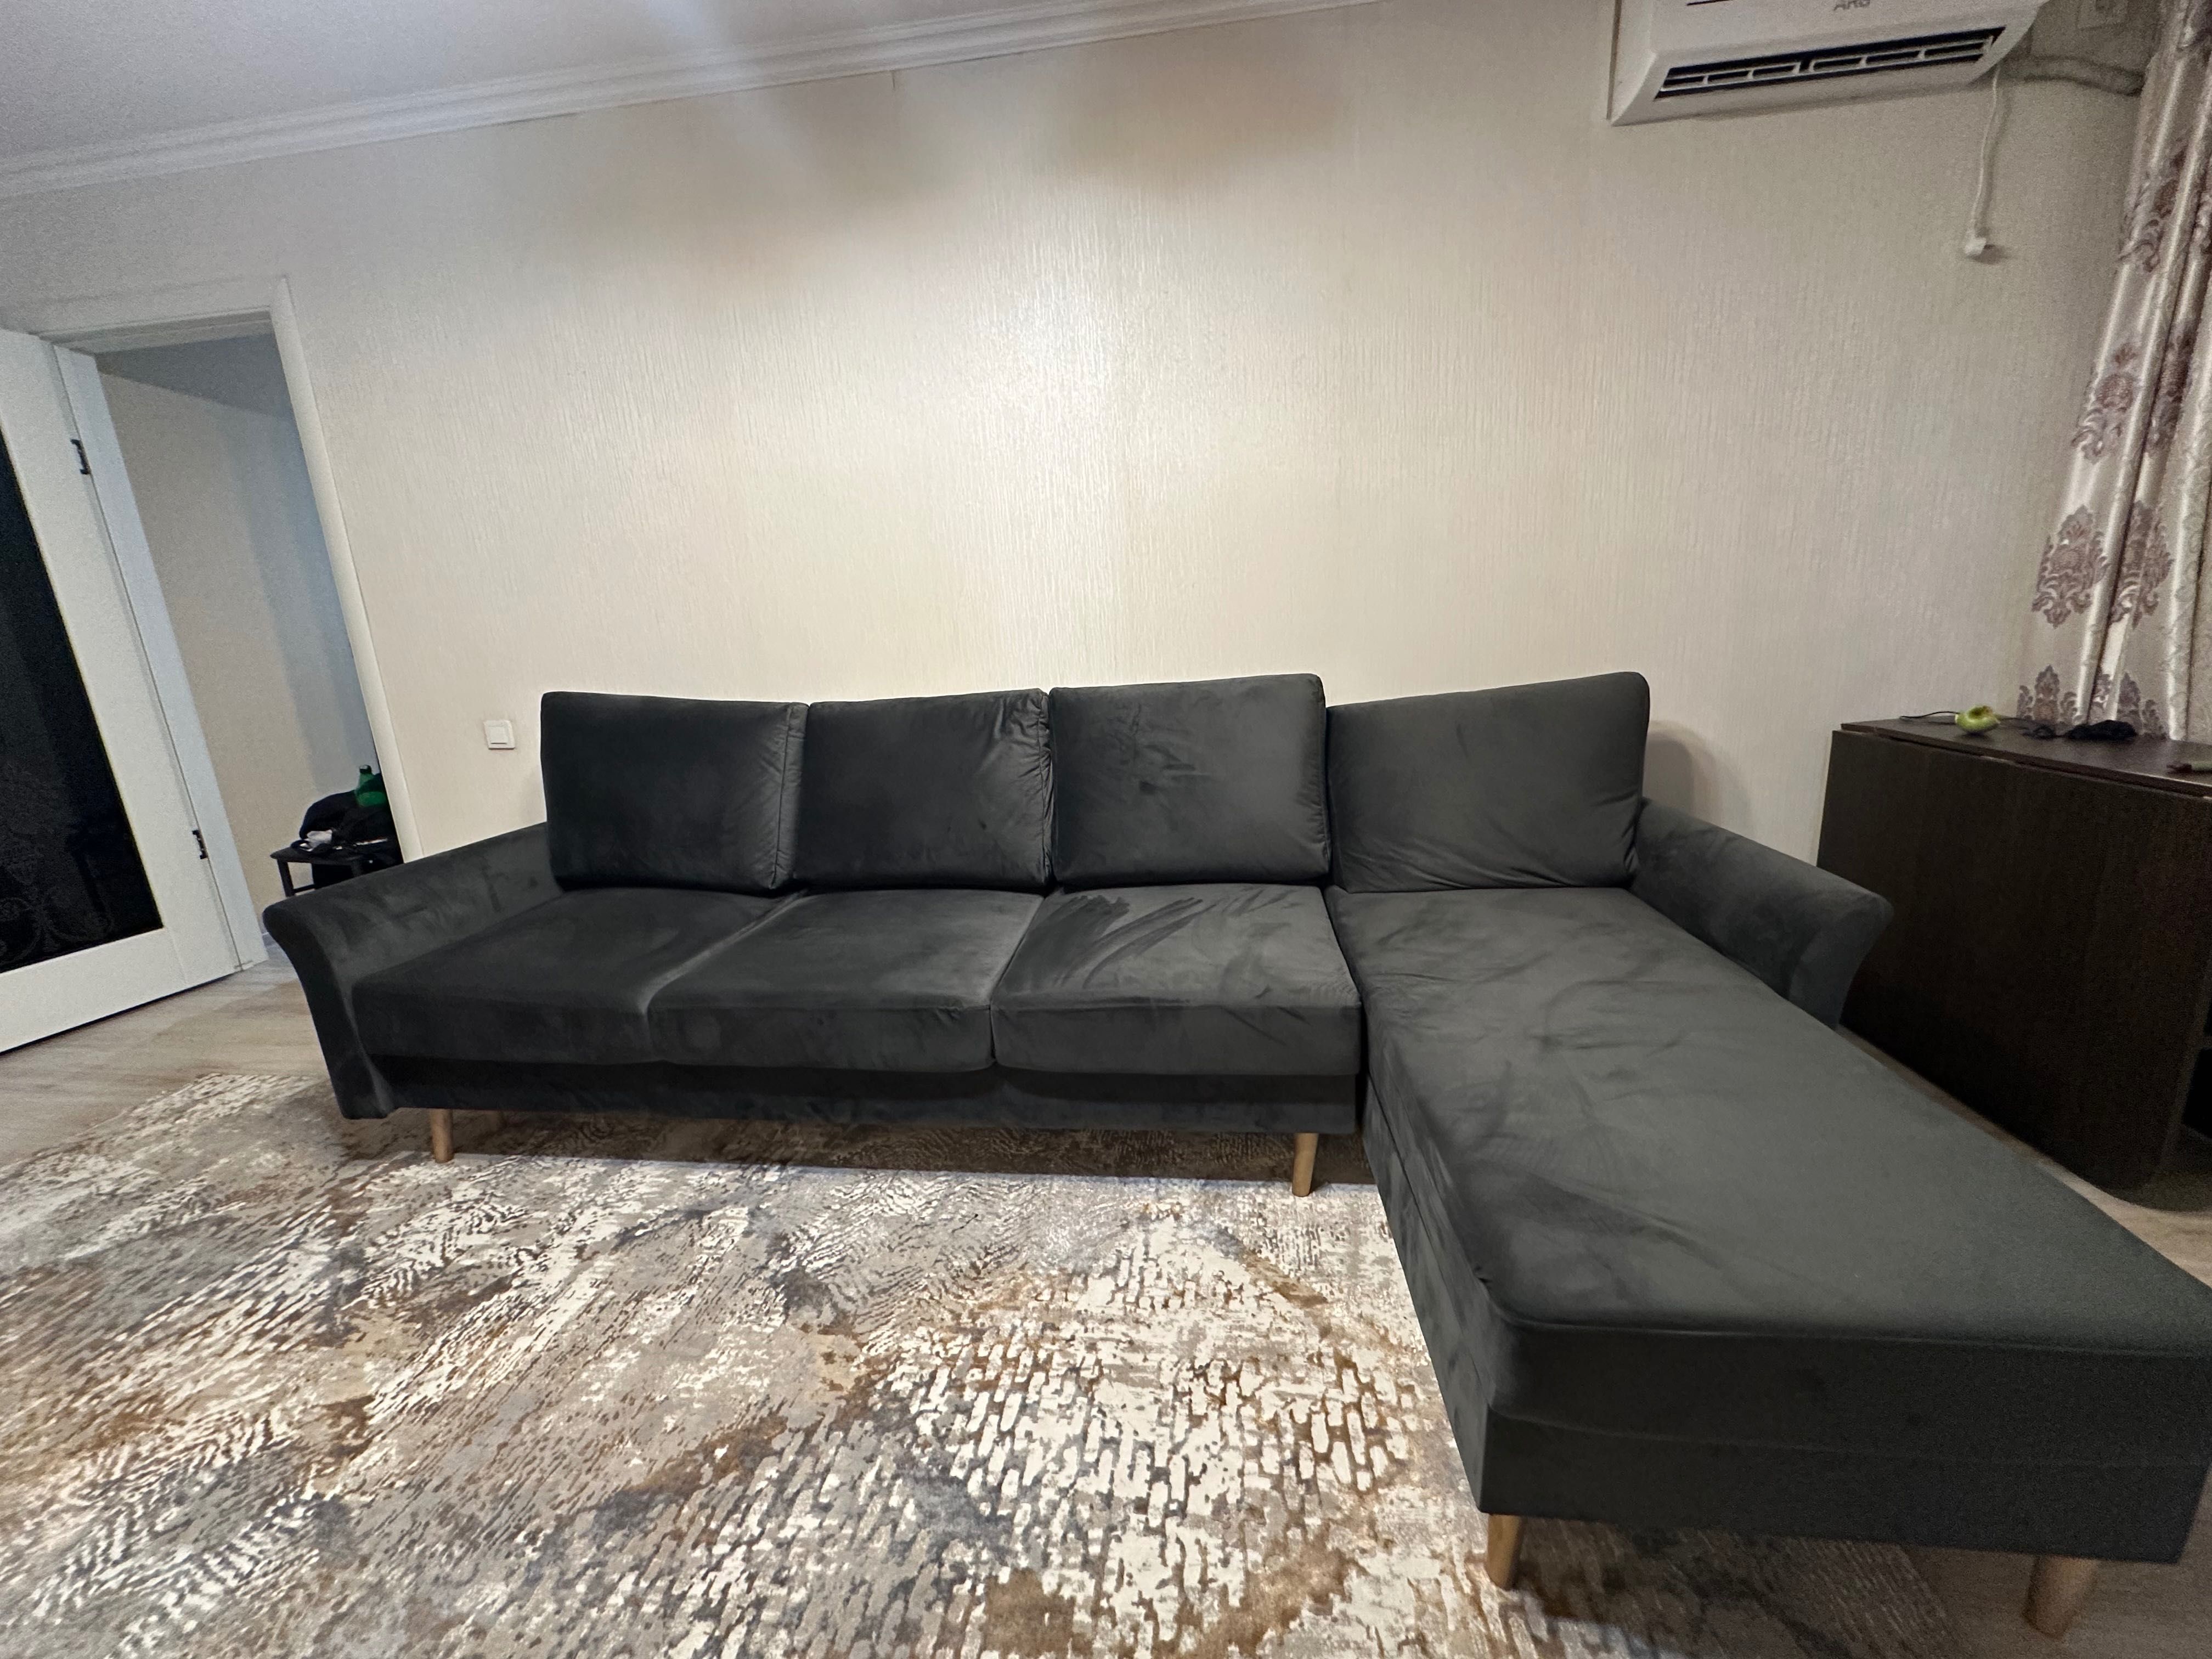 Продам диван. практически новый